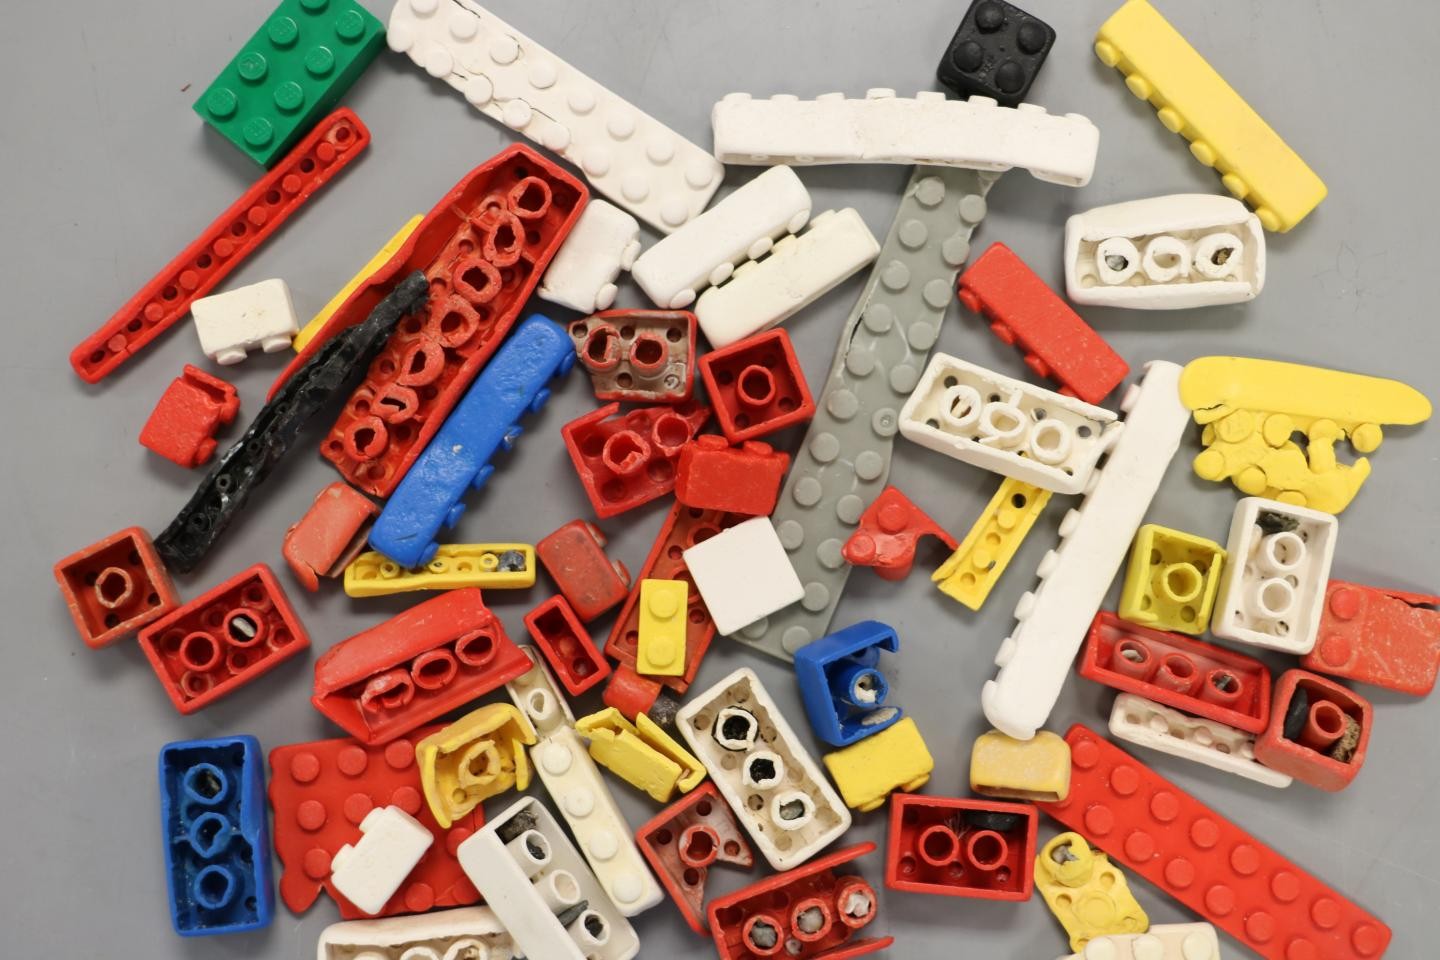  Peças de LEGO podem durar até 1300 anos no oceano, diz estudo (Foto: Andrew Turner, University of Plymouth)